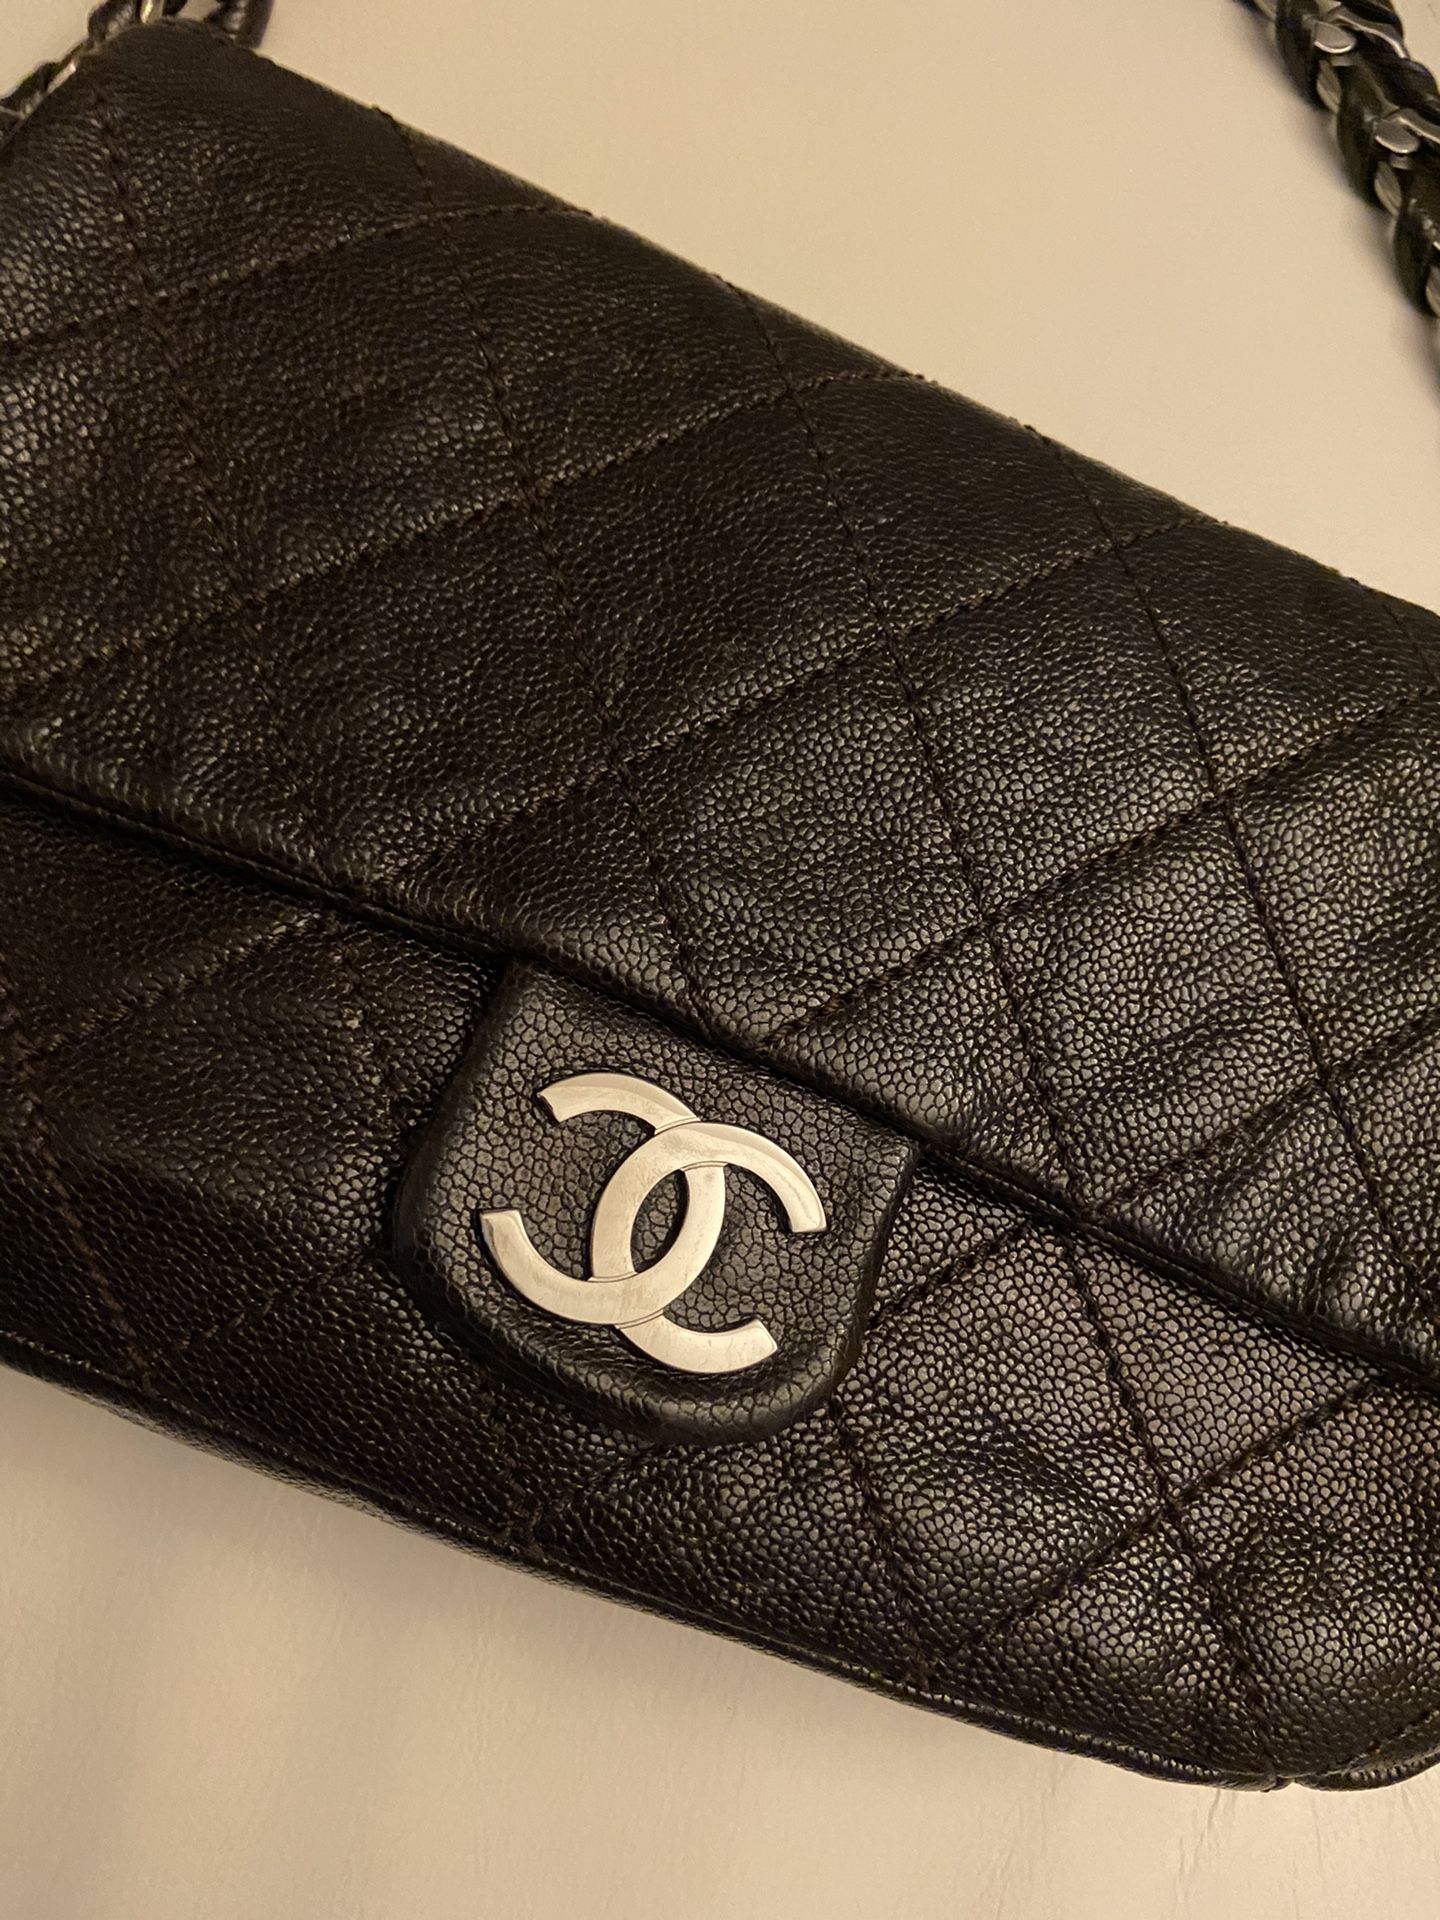 Chocolate Chanel Bag